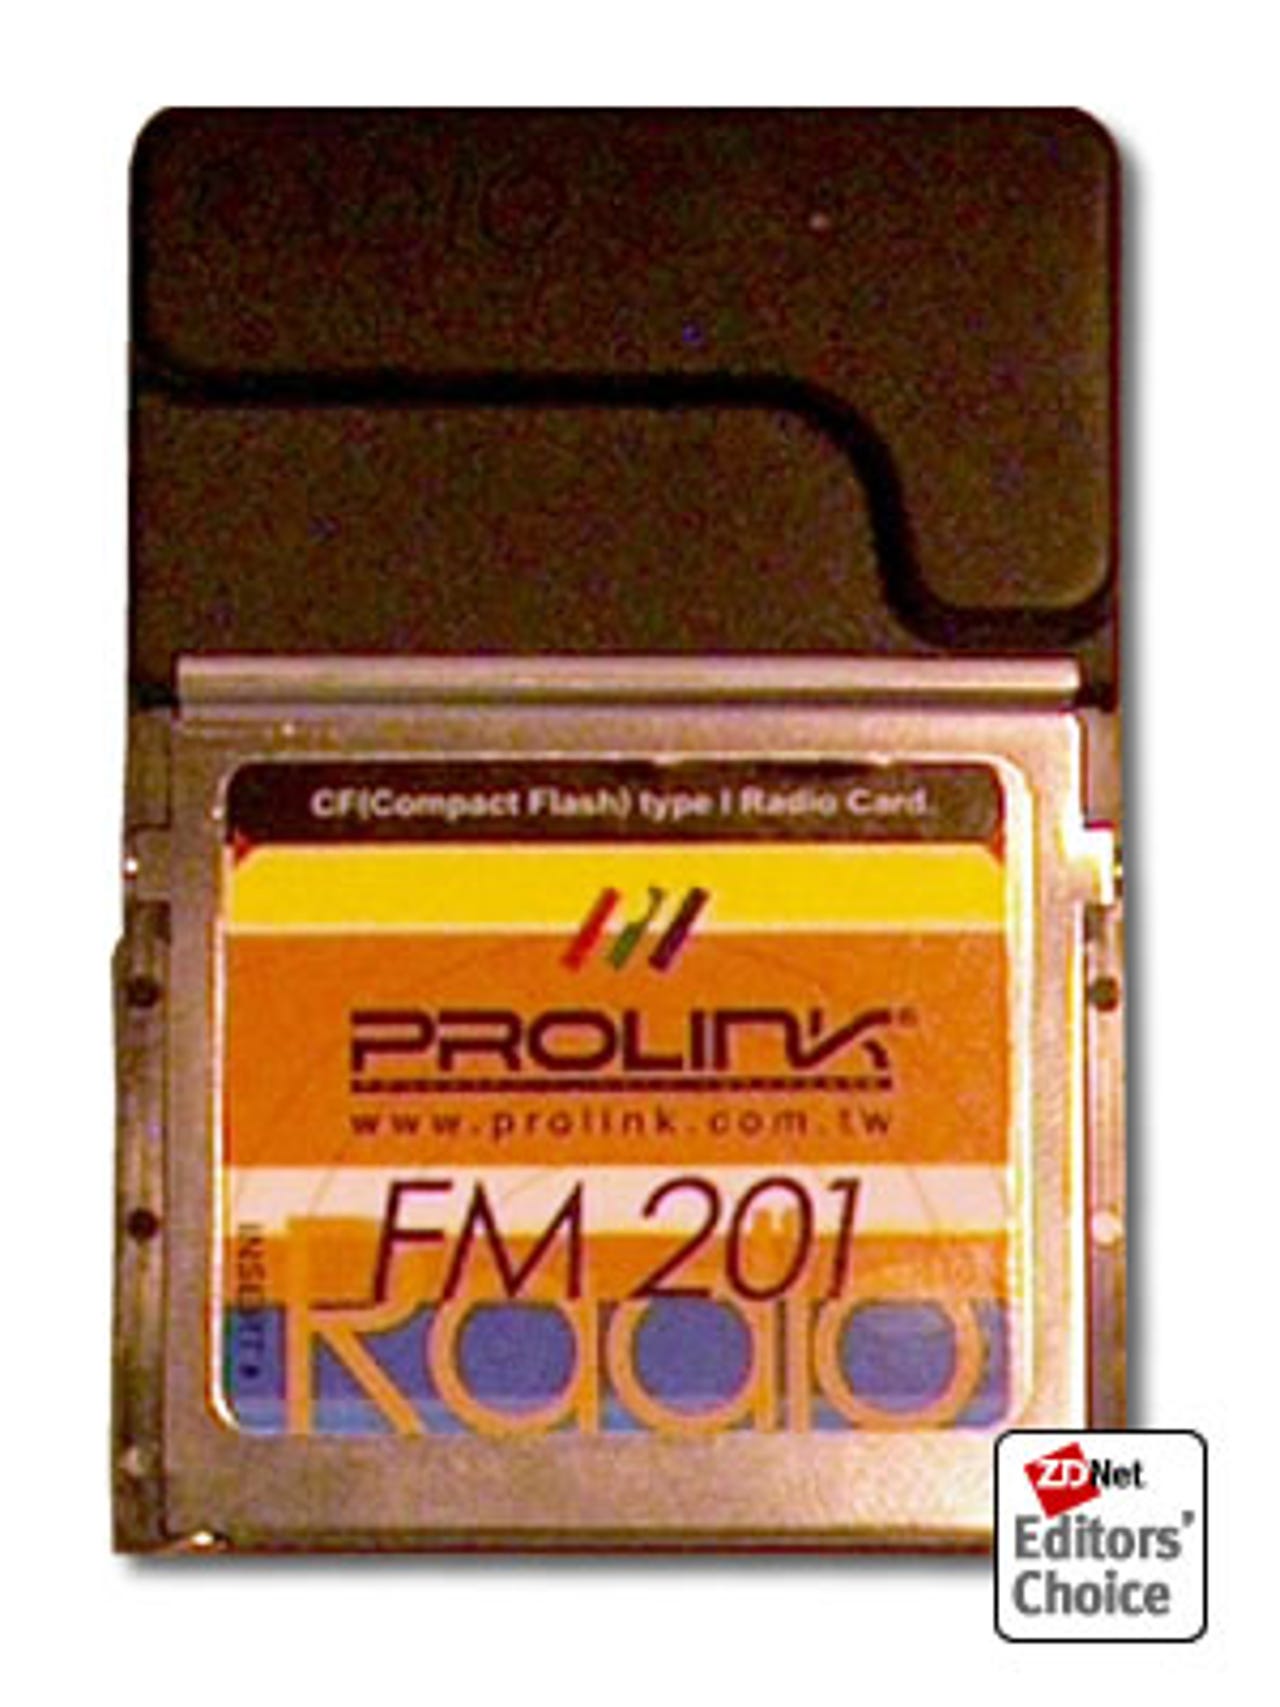 hhg-radio.jpg